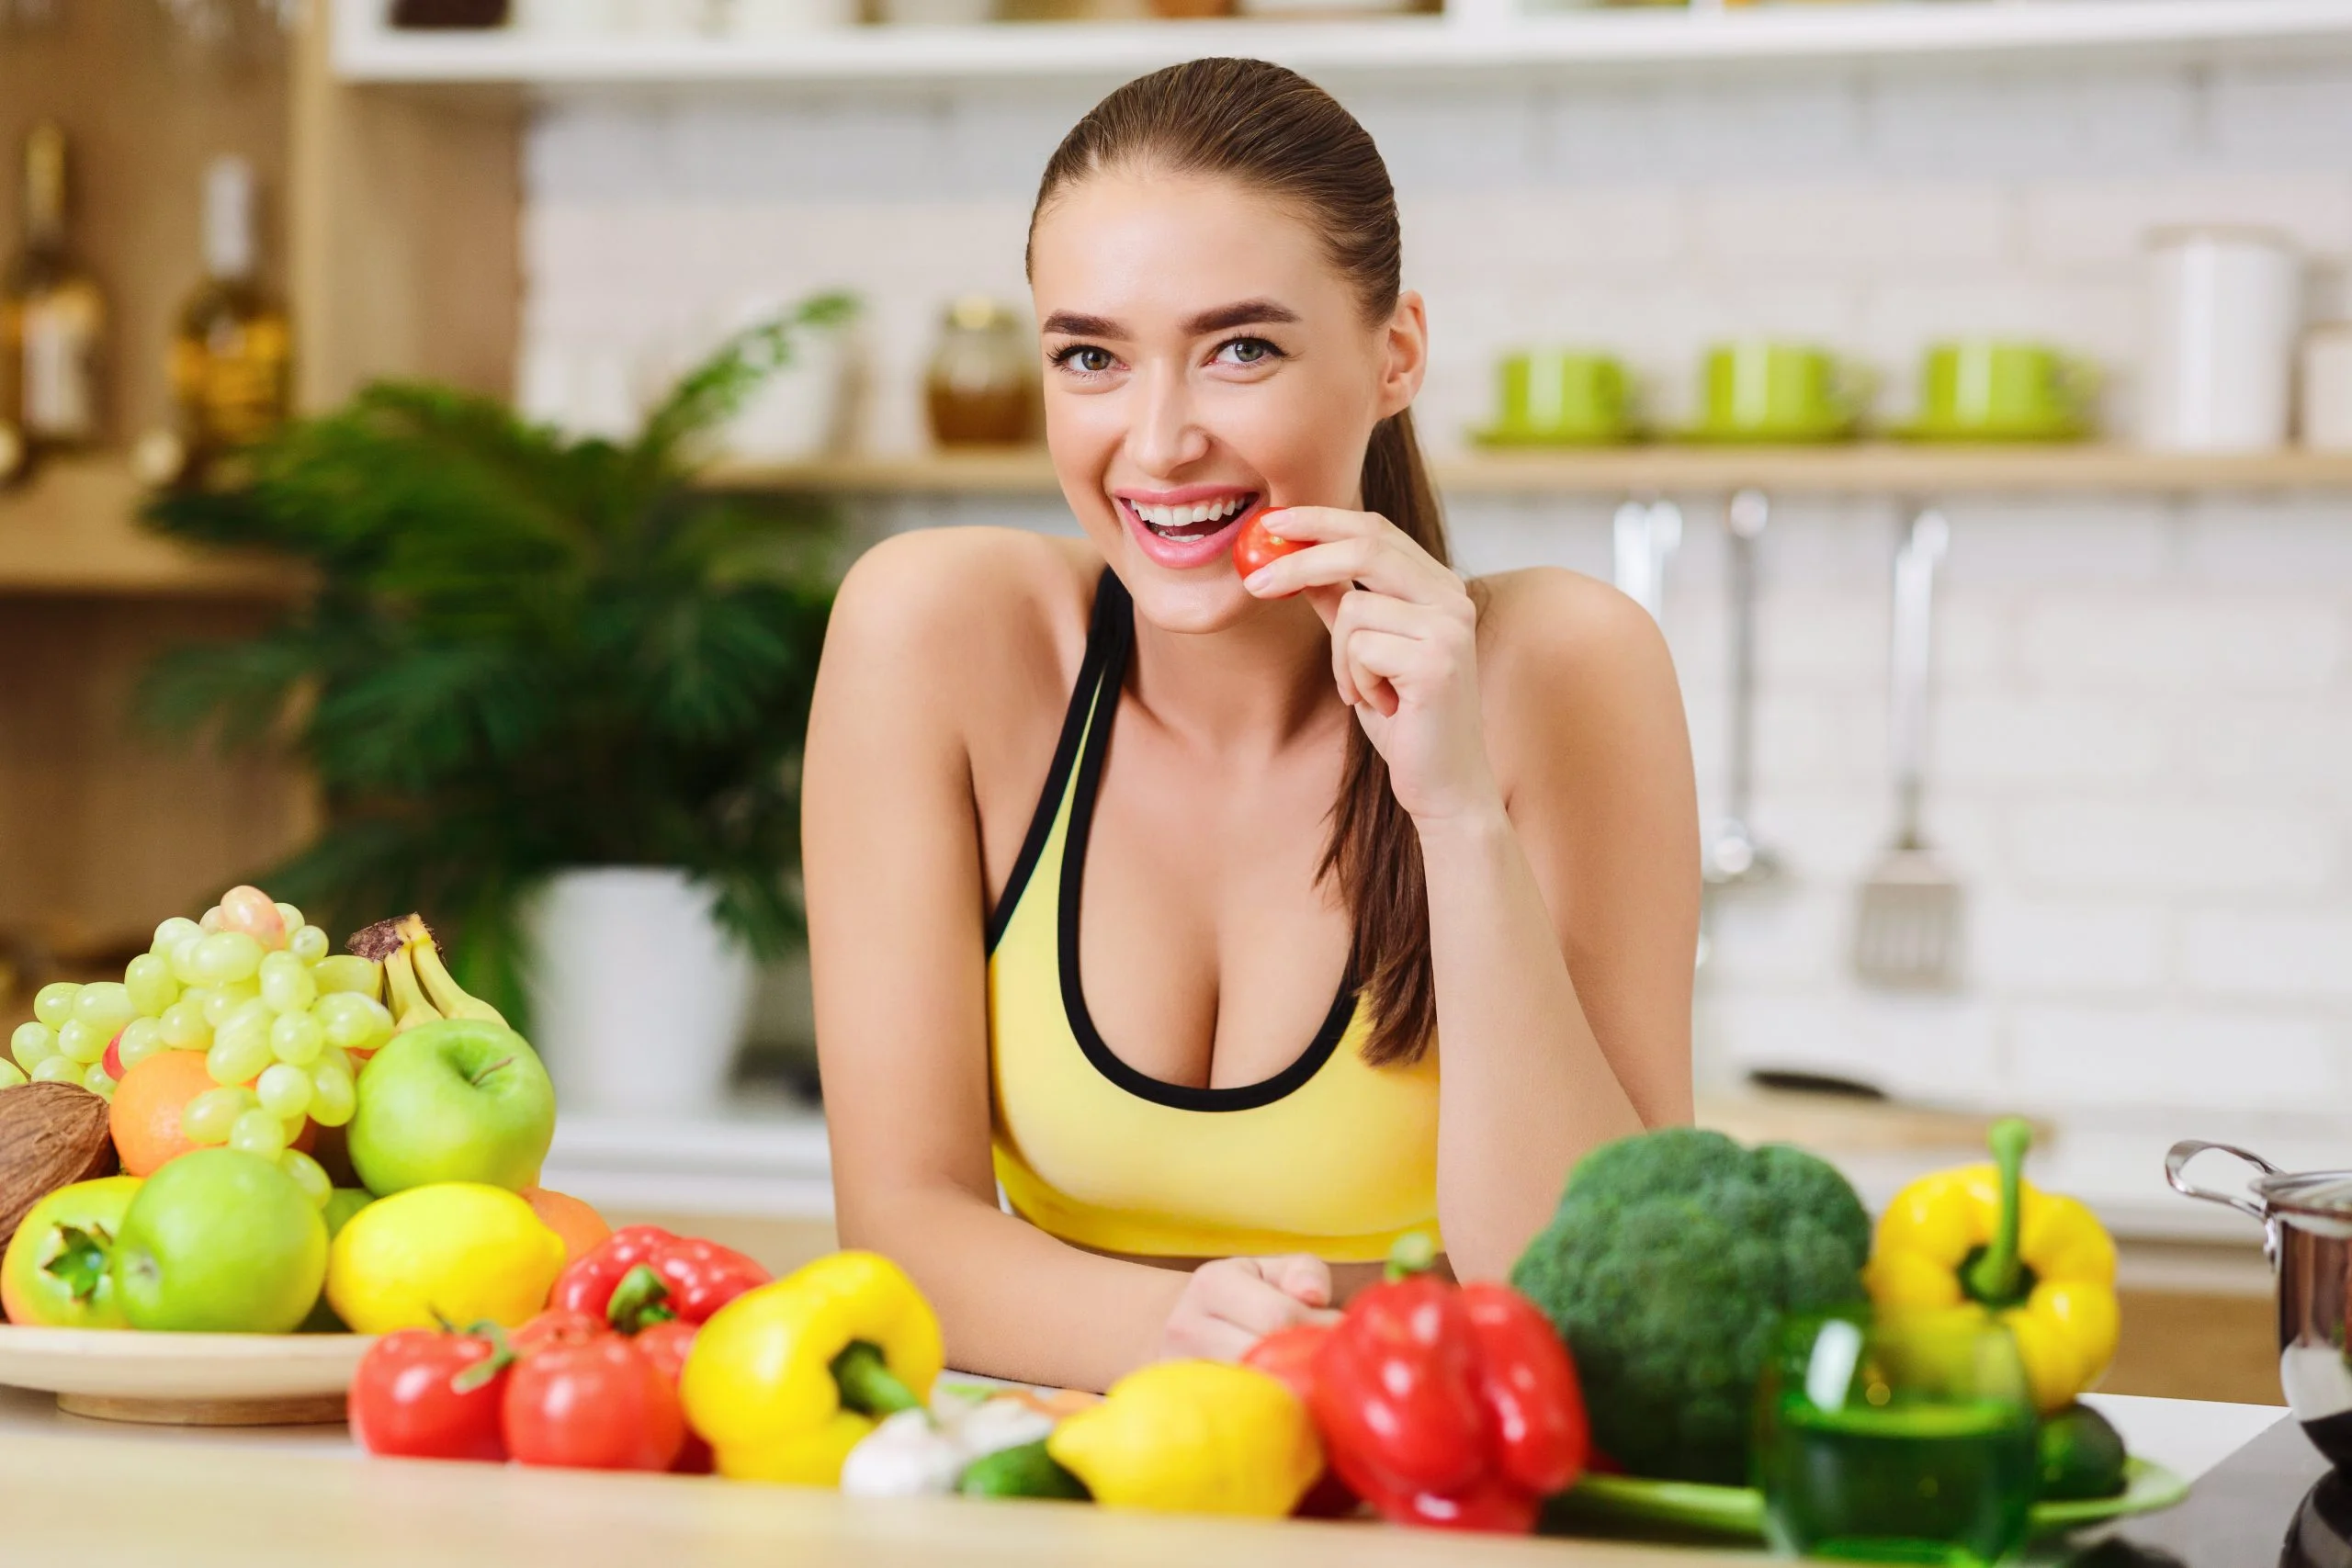 egy fiatal nő egy asztalnál ül, mosolyog, előtte zöldségek az asztalon